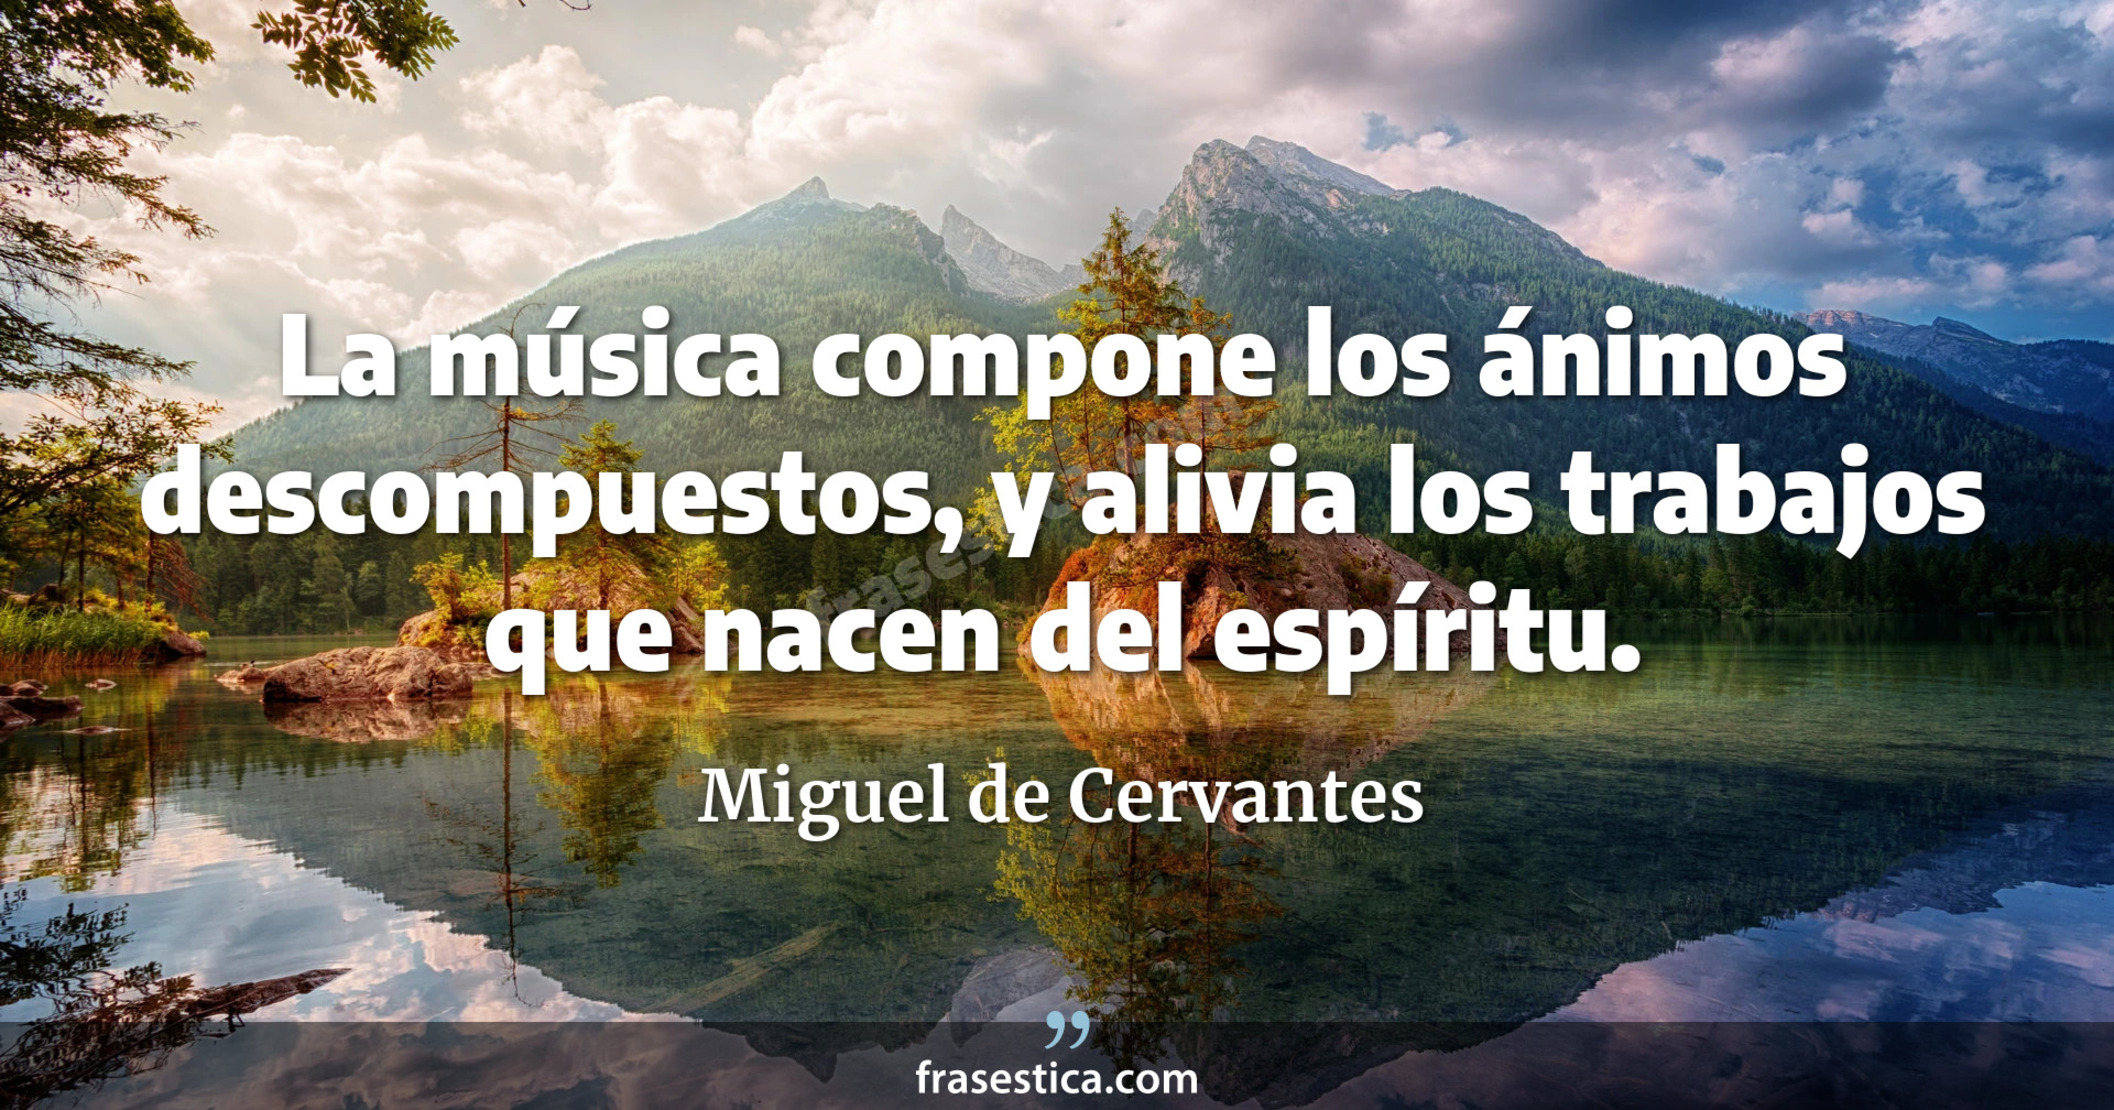 La música compone los ánimos descompuestos, y alivia los trabajos que nacen del espíritu. - Miguel de Cervantes